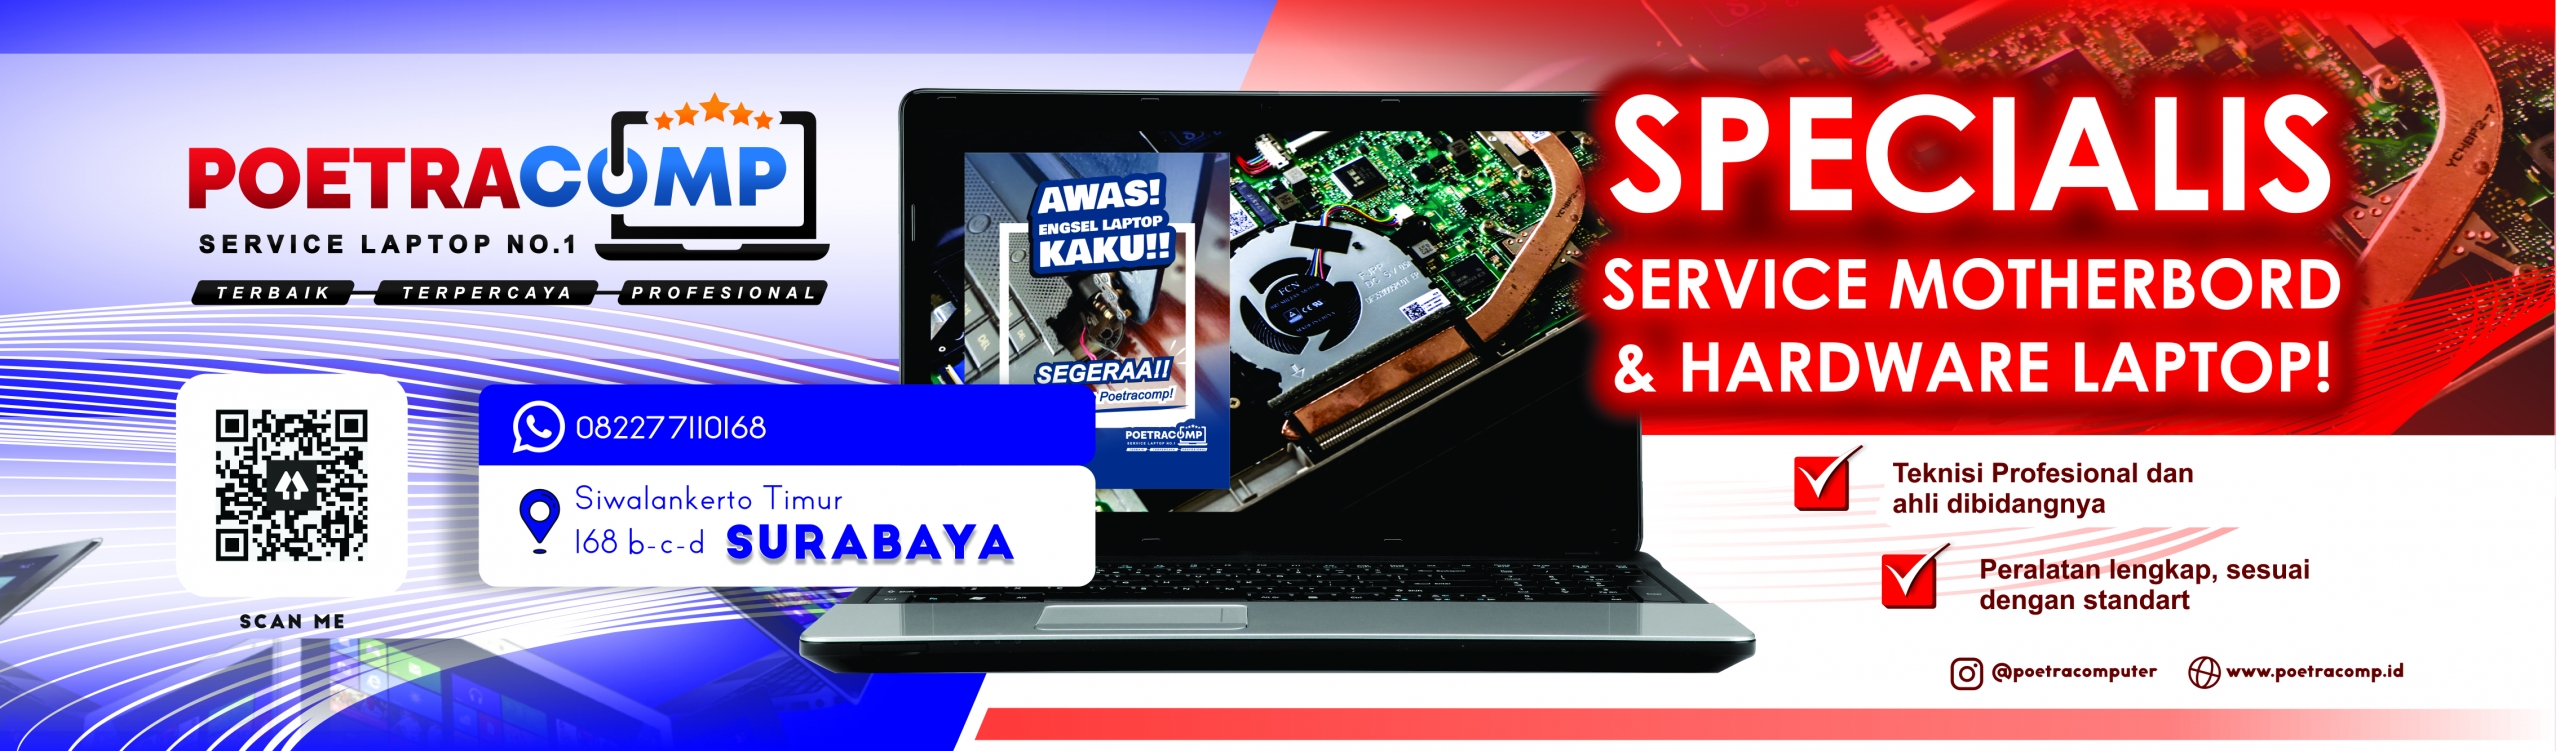 Selamat datang di Poetra Computer - Jasa Service Laptop Terbaik No.1 di Surabaya. Kami adalah pilihan utama Anda untuk layanan perbaikan laptop yang profesional, handal, dan terpercaya. Dengan pengalaman bertahun-tahun dalam industri ini, tim kami yang terampil dan berpengetahuan luas siap untuk mengatasi segala masalah laptop Anda.